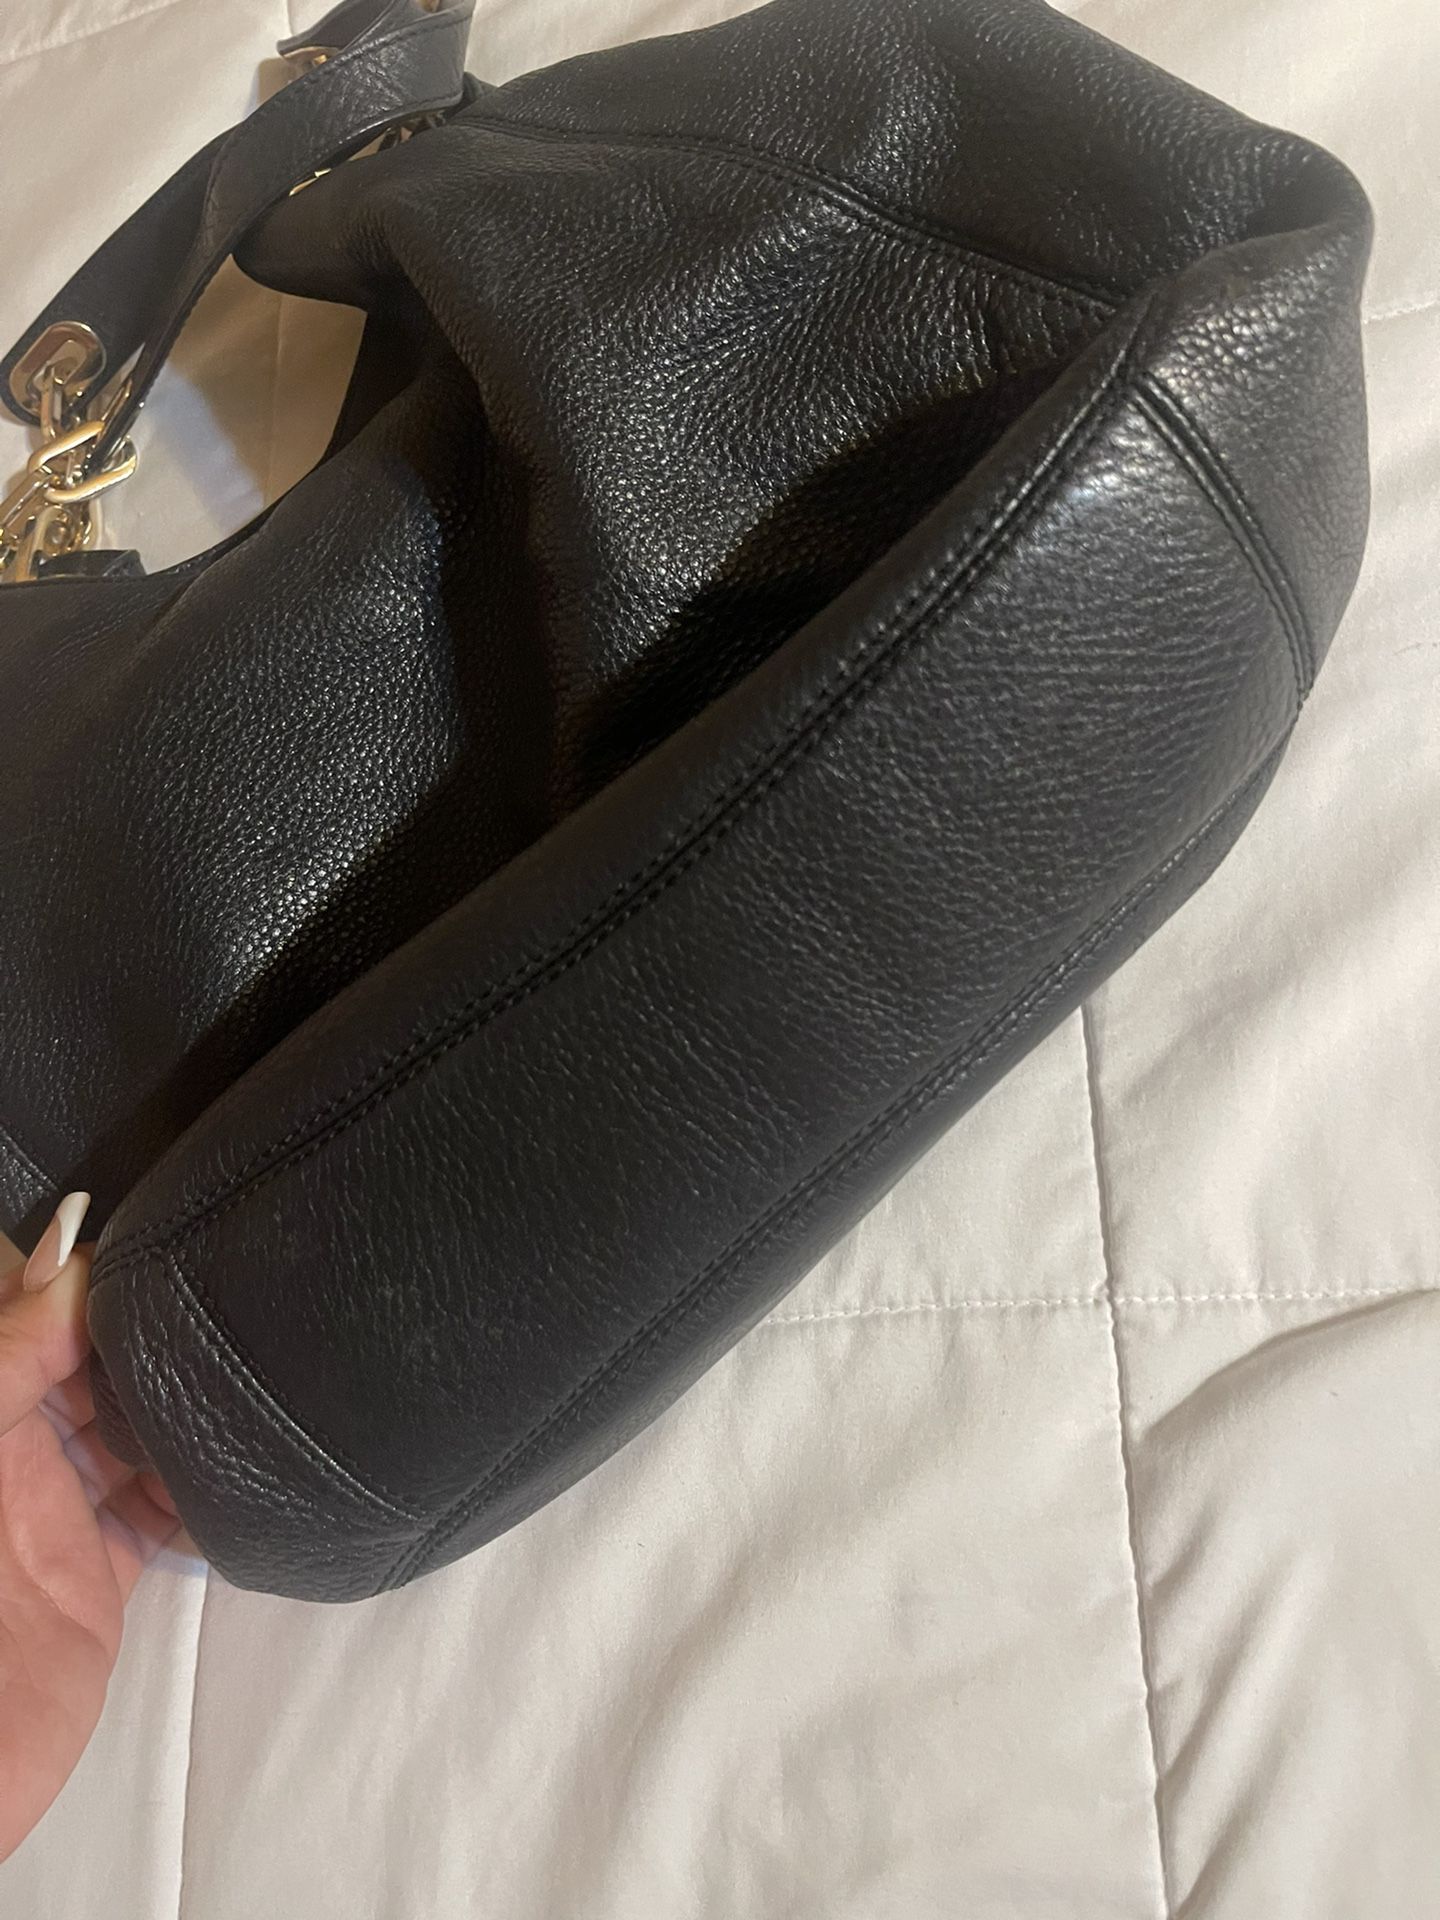 Michael Kors Black Shoulder Bag for Sale in West Covina, CA - OfferUp